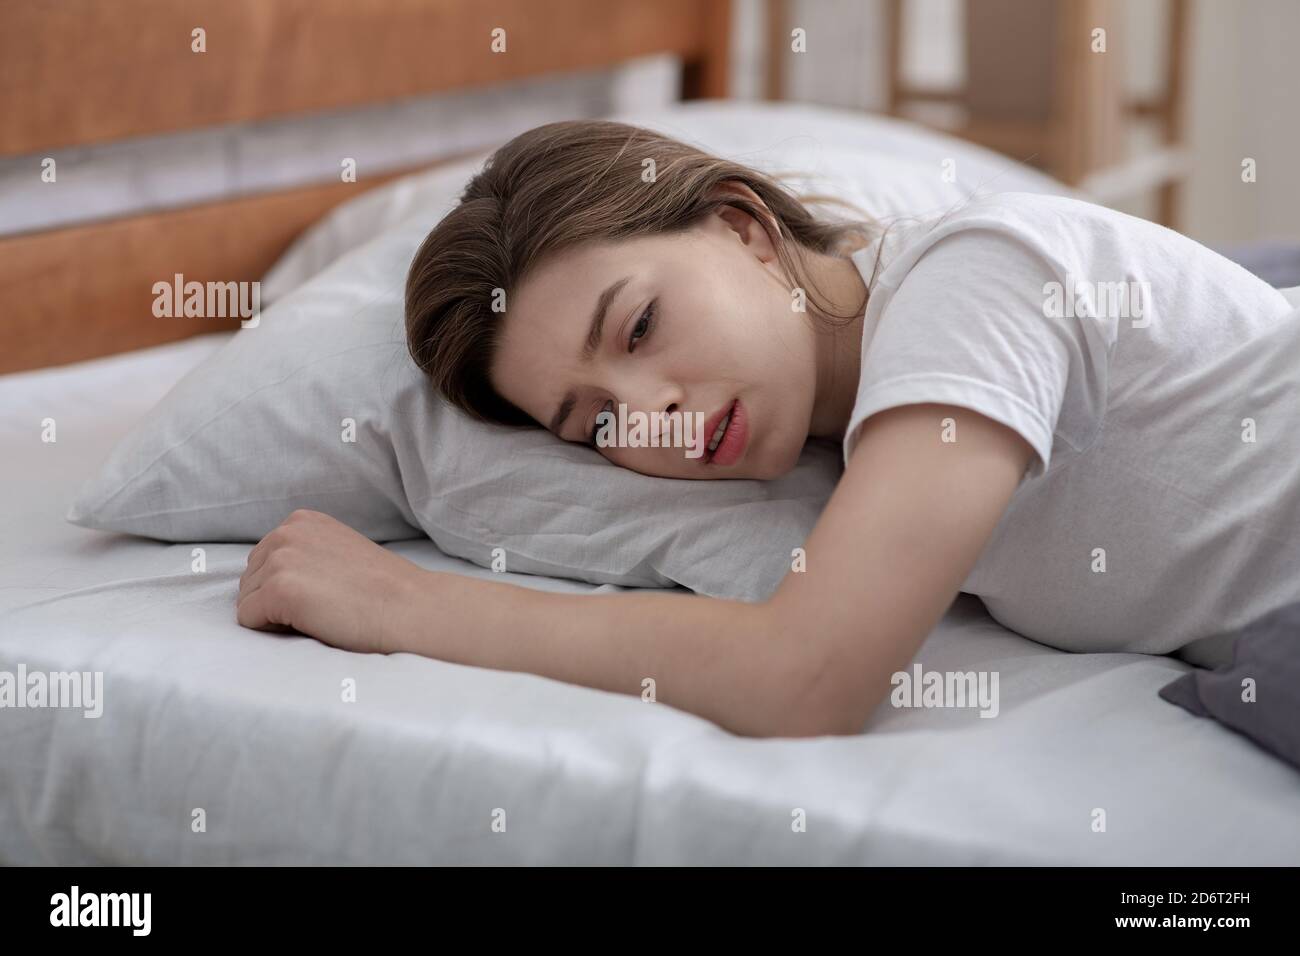 Une jeune femme couché seule dans son lit, pleurant de la perte d'un être cher, souffrant d'une dépression grave Banque D'Images